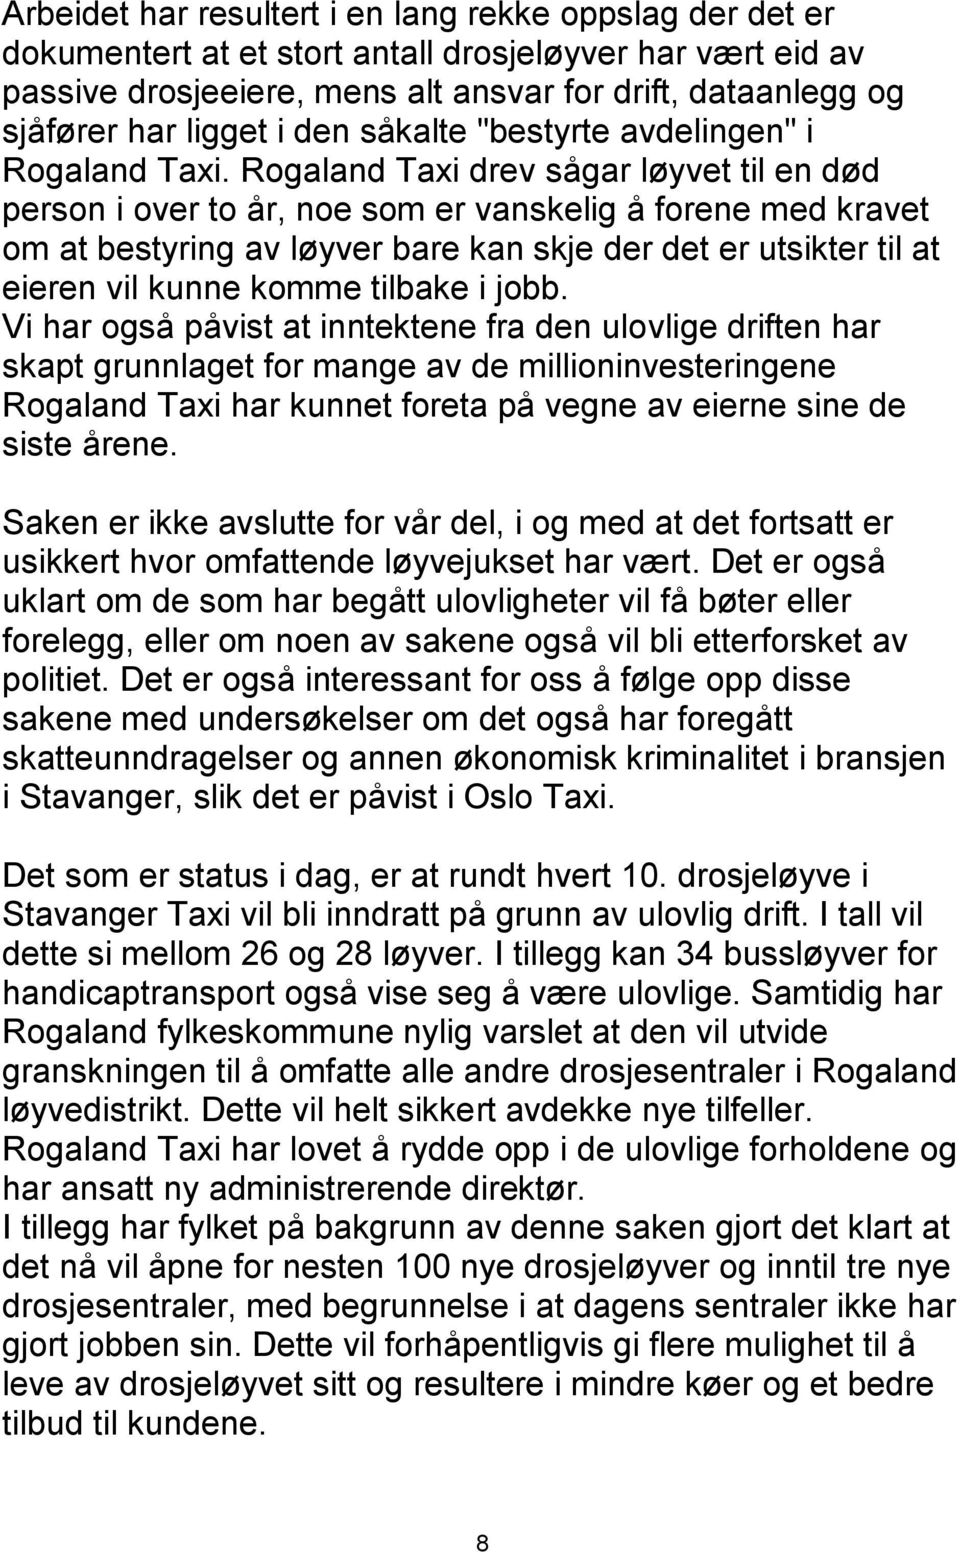 Rogaland Taxi drev sågar løyvet til en død person i over to år, noe som er vanskelig å forene med kravet om at bestyring av løyver bare kan skje der det er utsikter til at eieren vil kunne komme